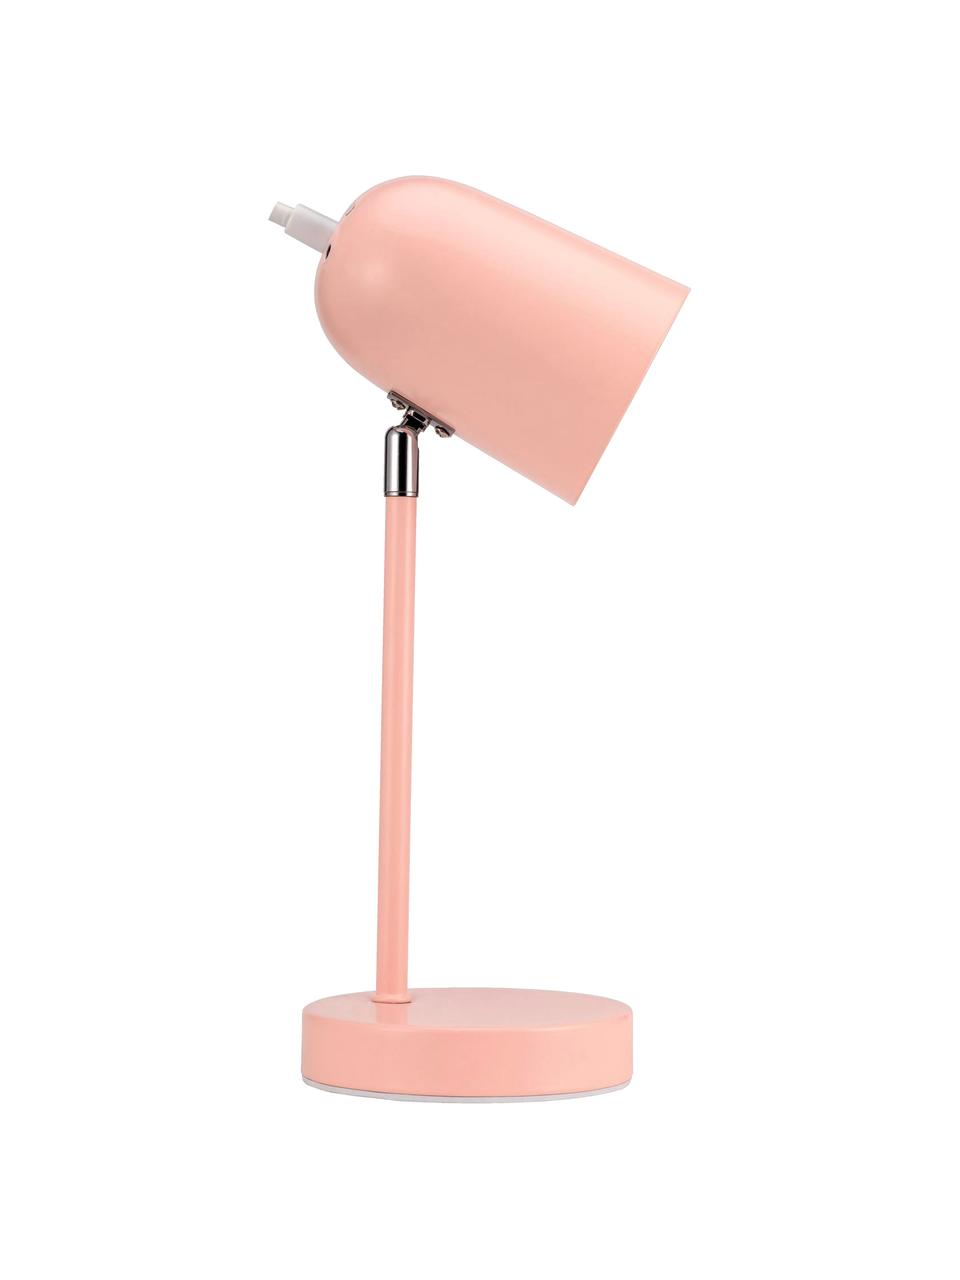 Kleine Schreibtischlampe True Pearl in Rosa, Lampenschirm: Metall, beschichtet, Lampenfuß: Metall, beschichtet, Rosa, 12 x 34 cm